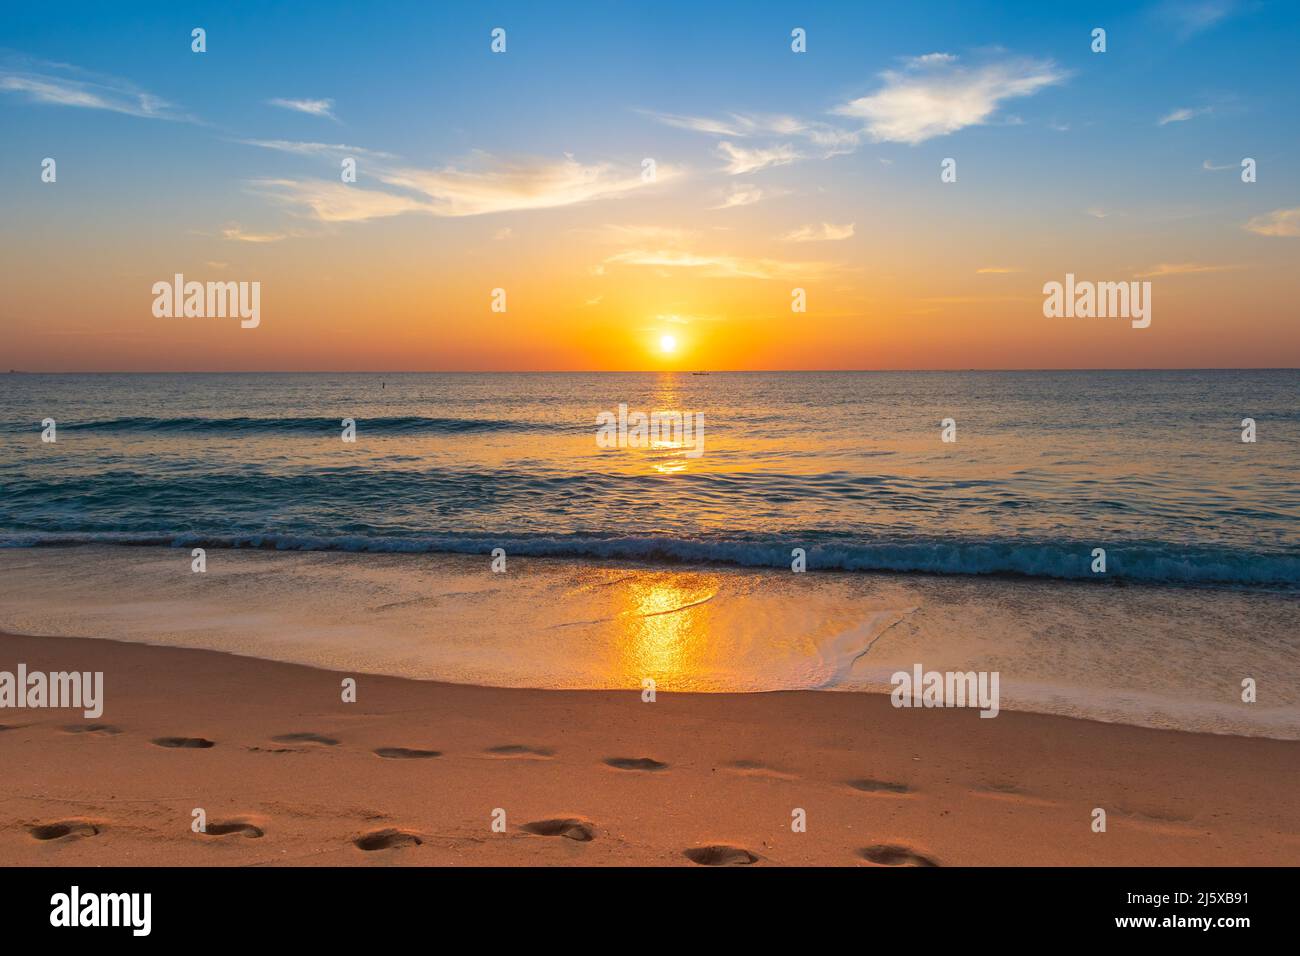 Impresionante amanecer y paisaje de playa. Foto de stock